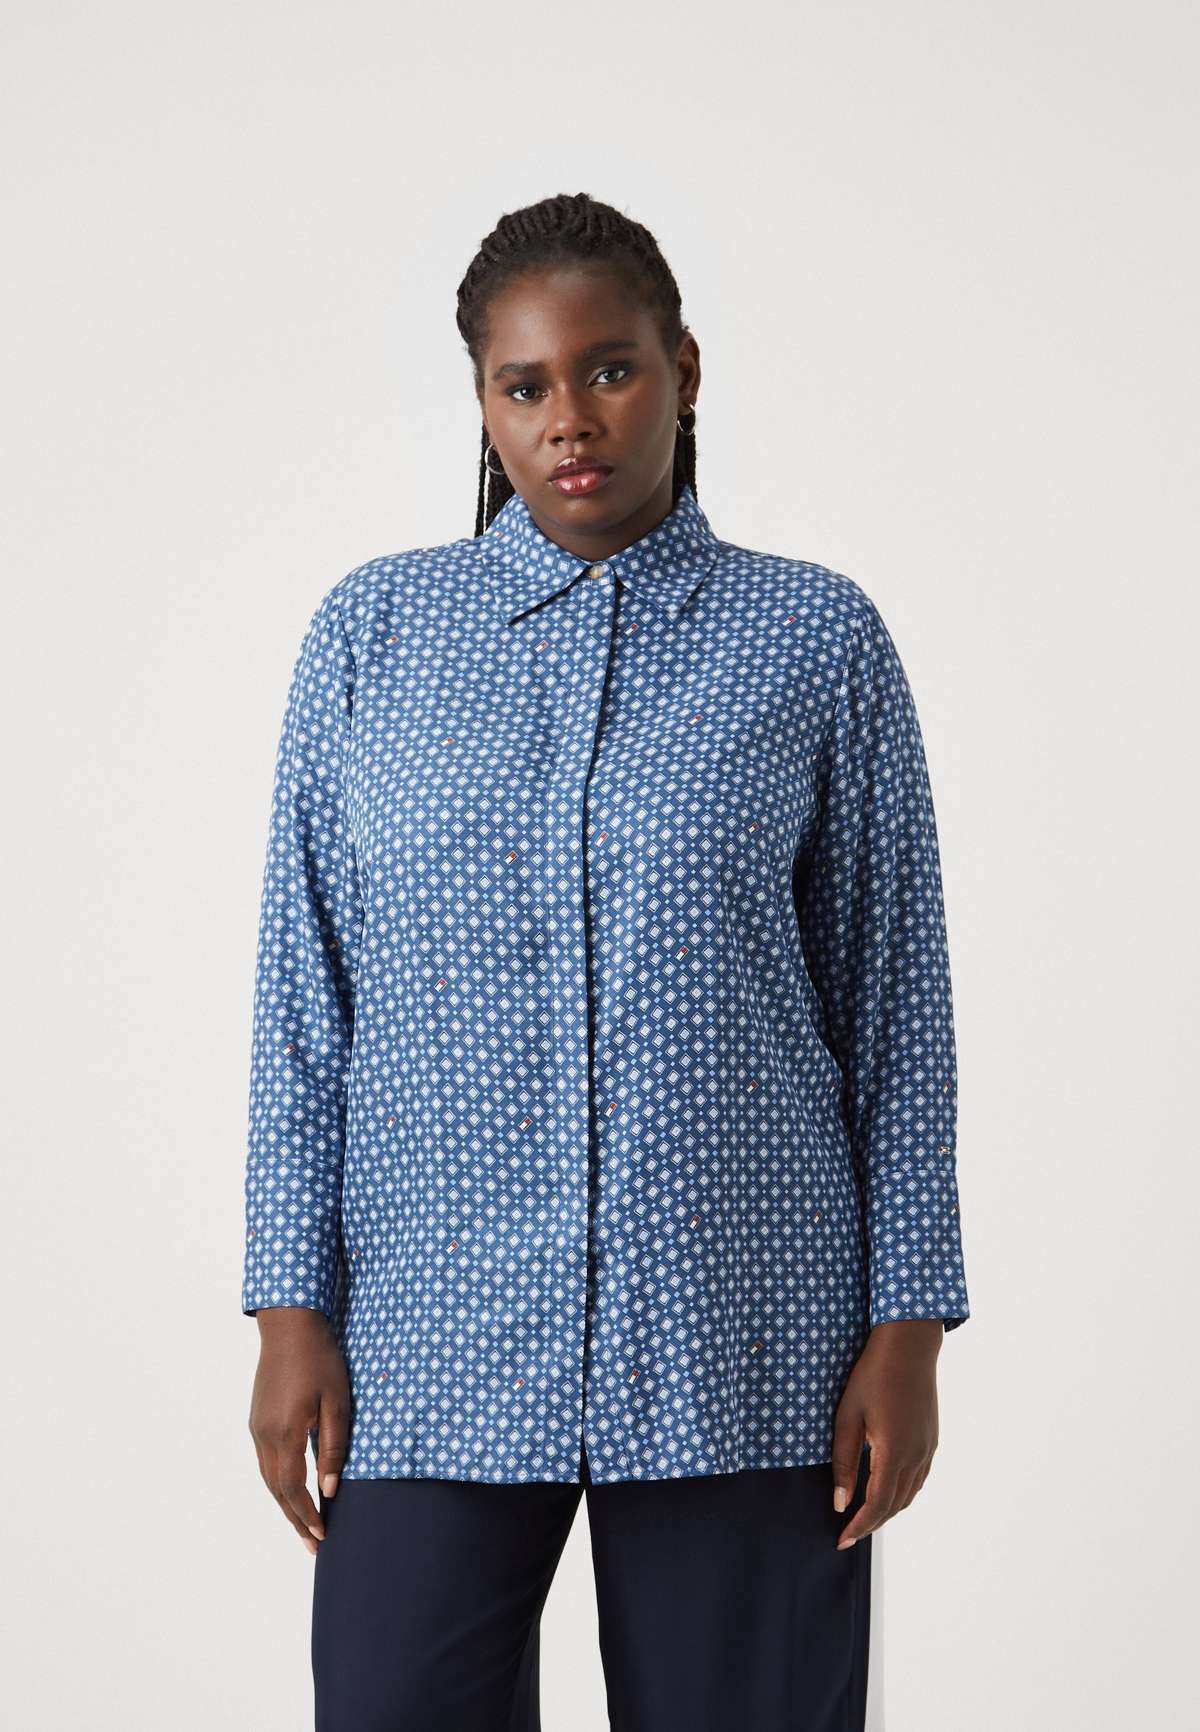 Блуза-рубашка REGULAR SHIRT